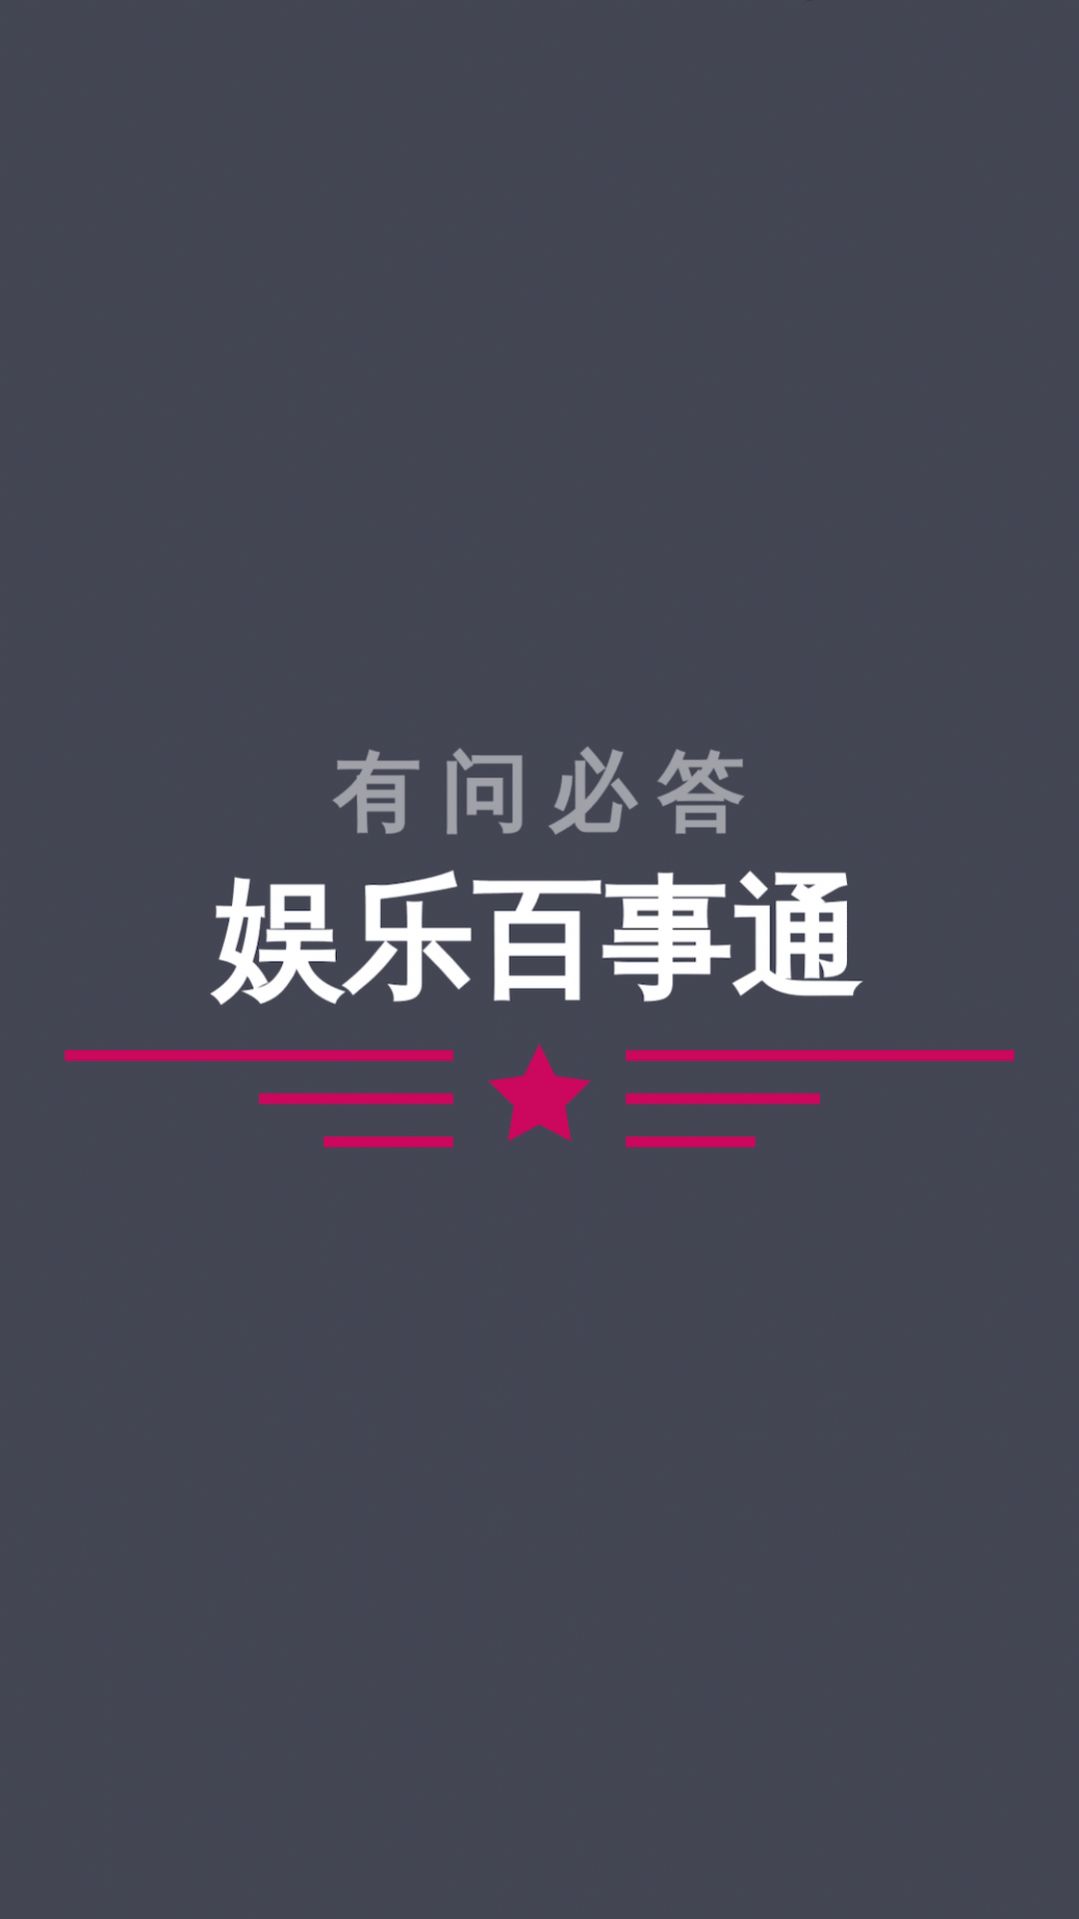 娱乐百事通智能ai官方版app图片1